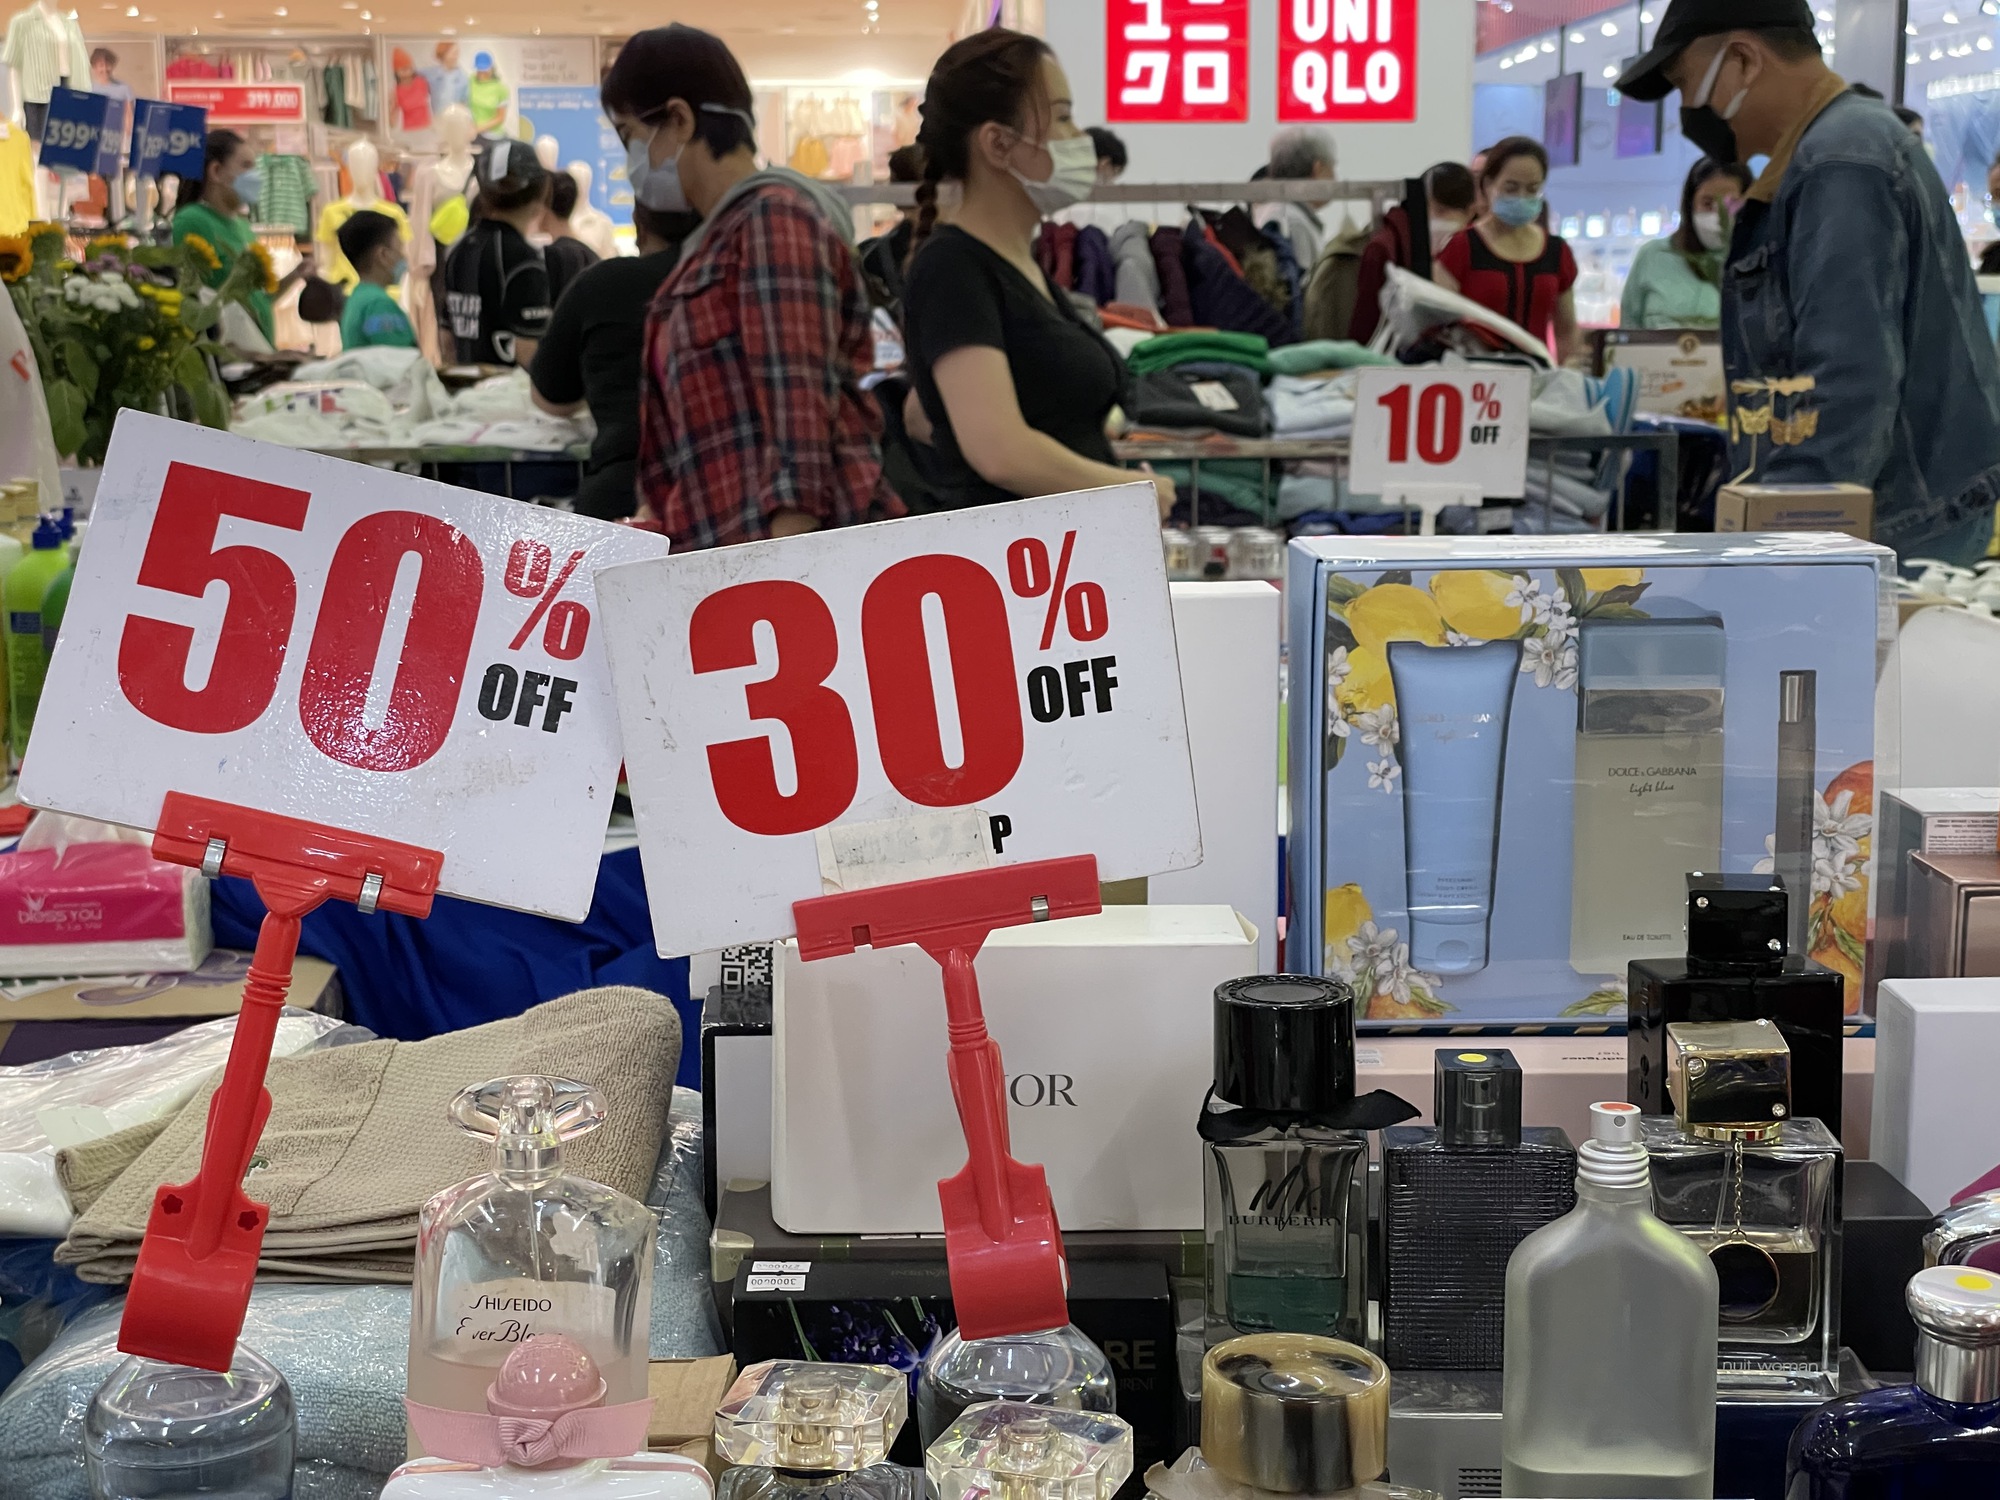 Quần áo, giày dép ở trung tâm thương mại giảm giá nhiều cũng không ai mua - Ảnh 6.